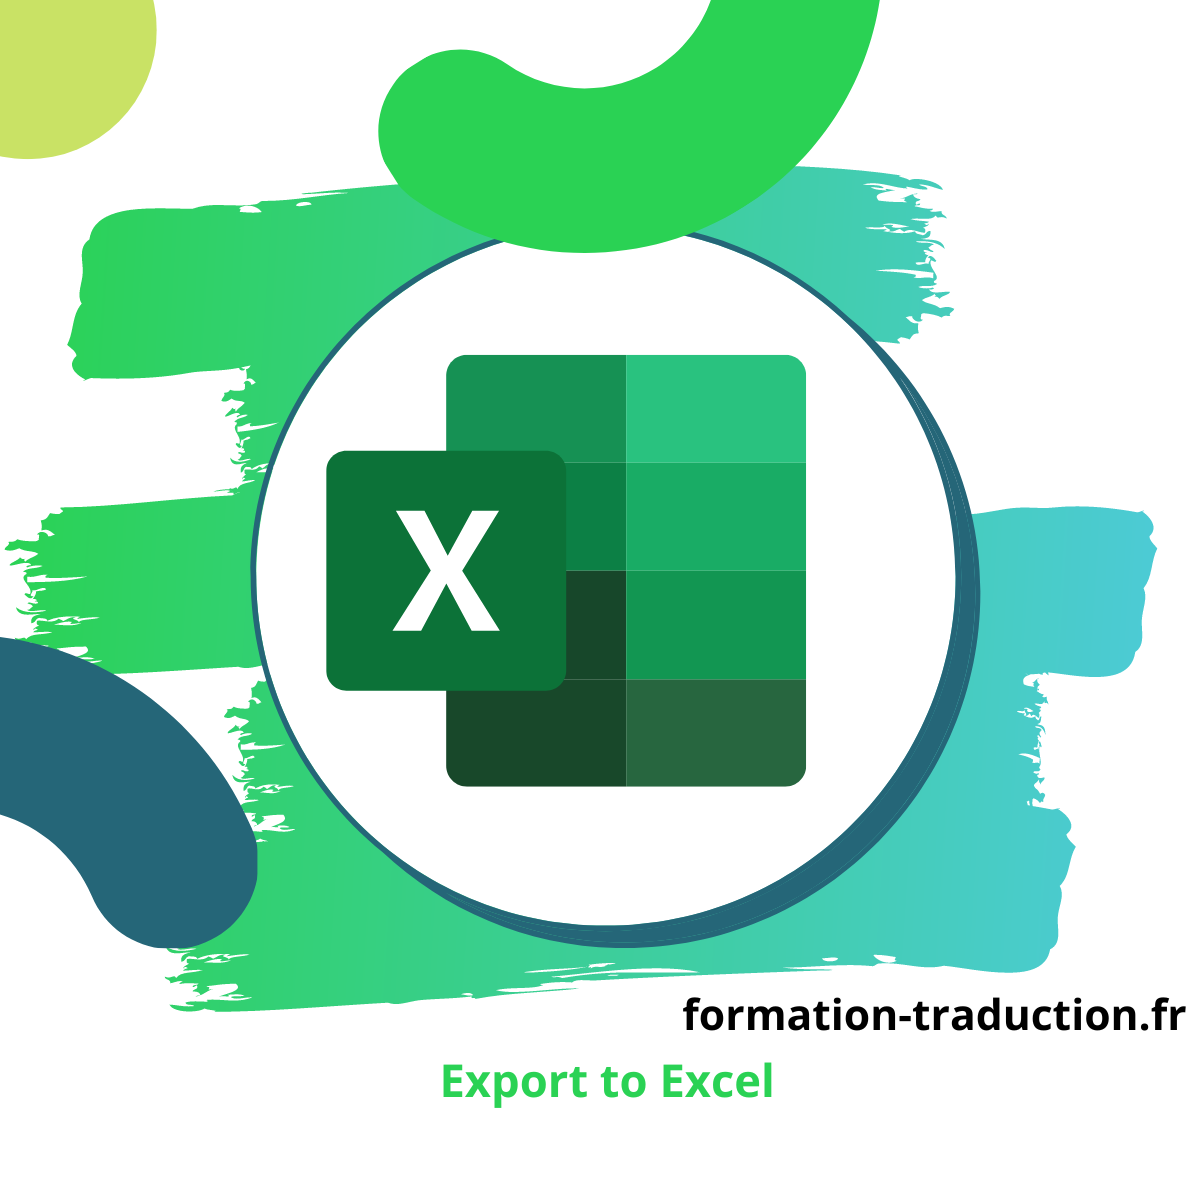 Export to Excel